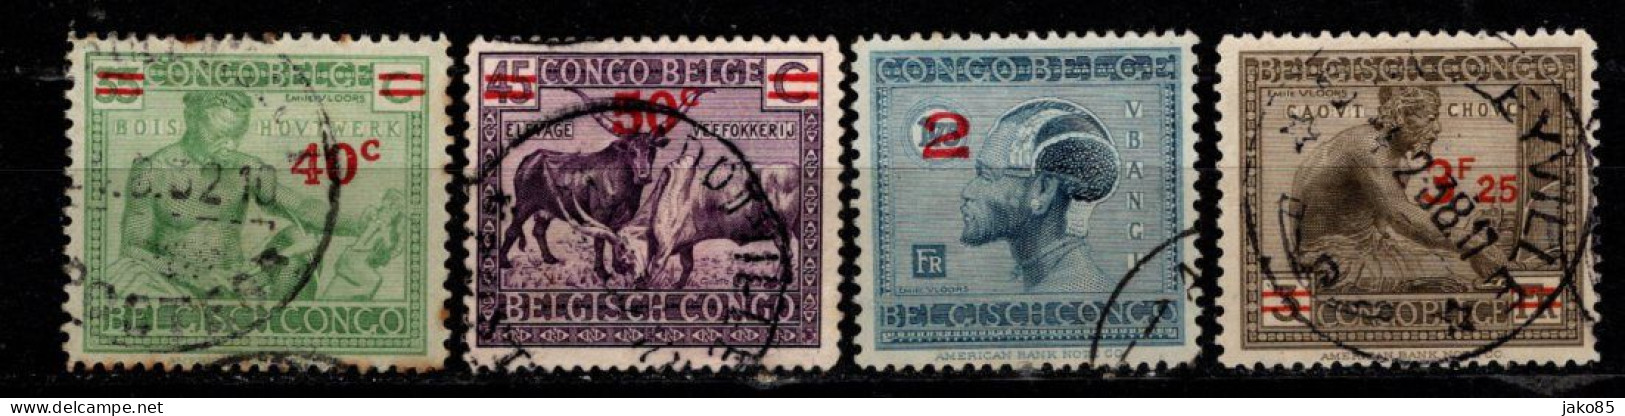 - CONGO BELGE - 1931 / 32 - YT N° 159 / 161A - Oblitérés - Surchargés - Série Complète - Ongebruikt